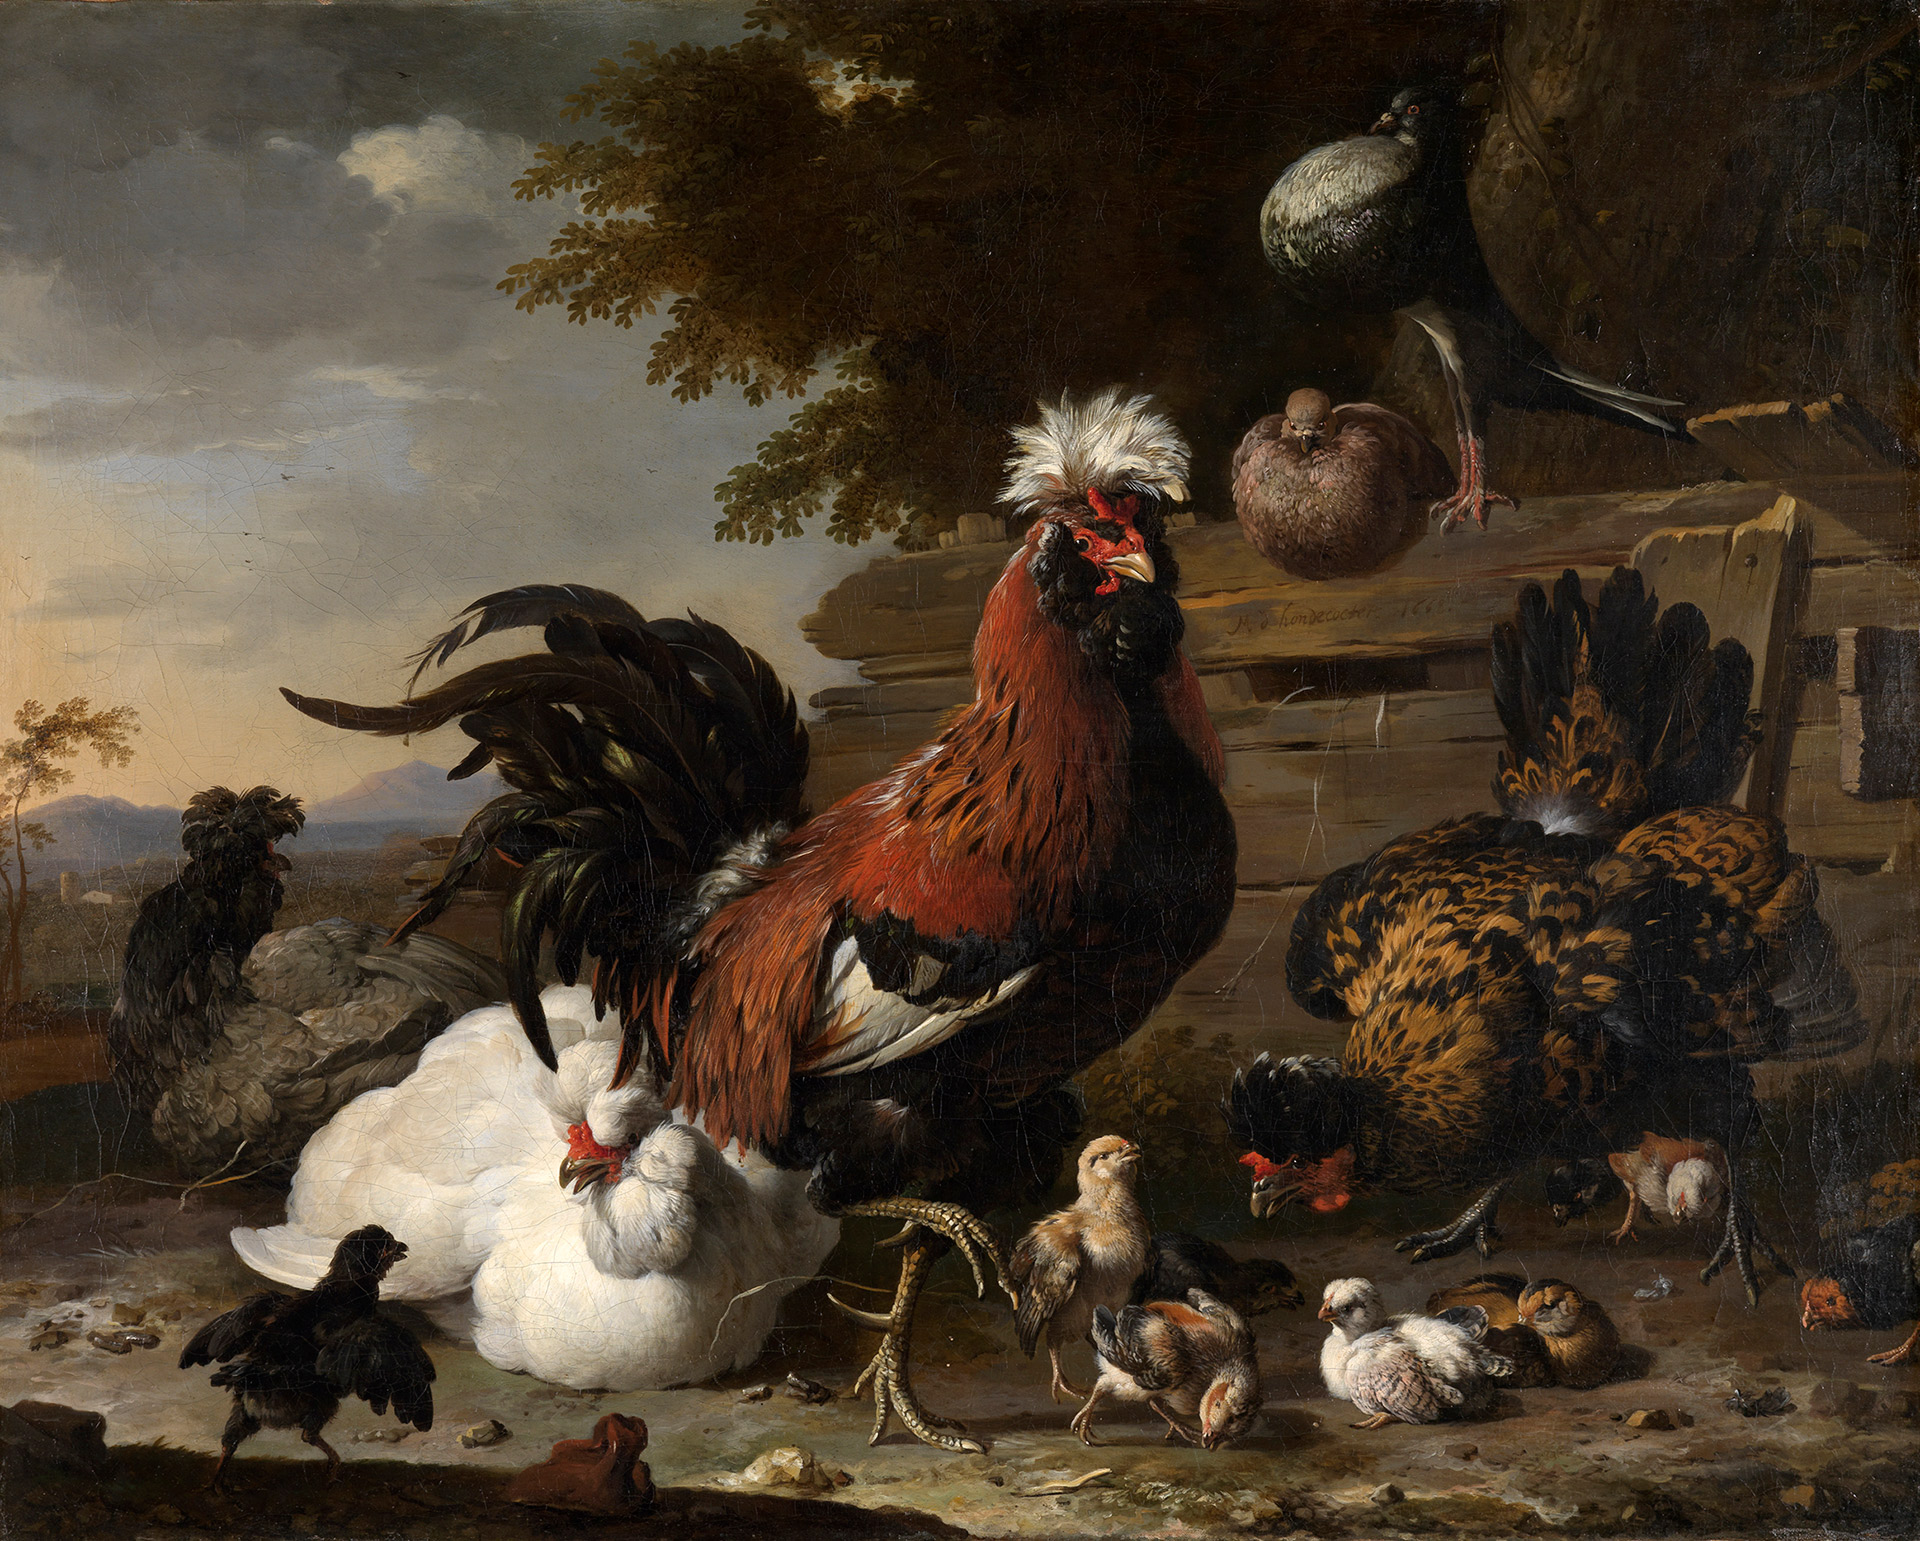 Ölgemälde von Melchior de Hondecoeter mit einem prächtigen Hahn umringt von Hennen und Küken